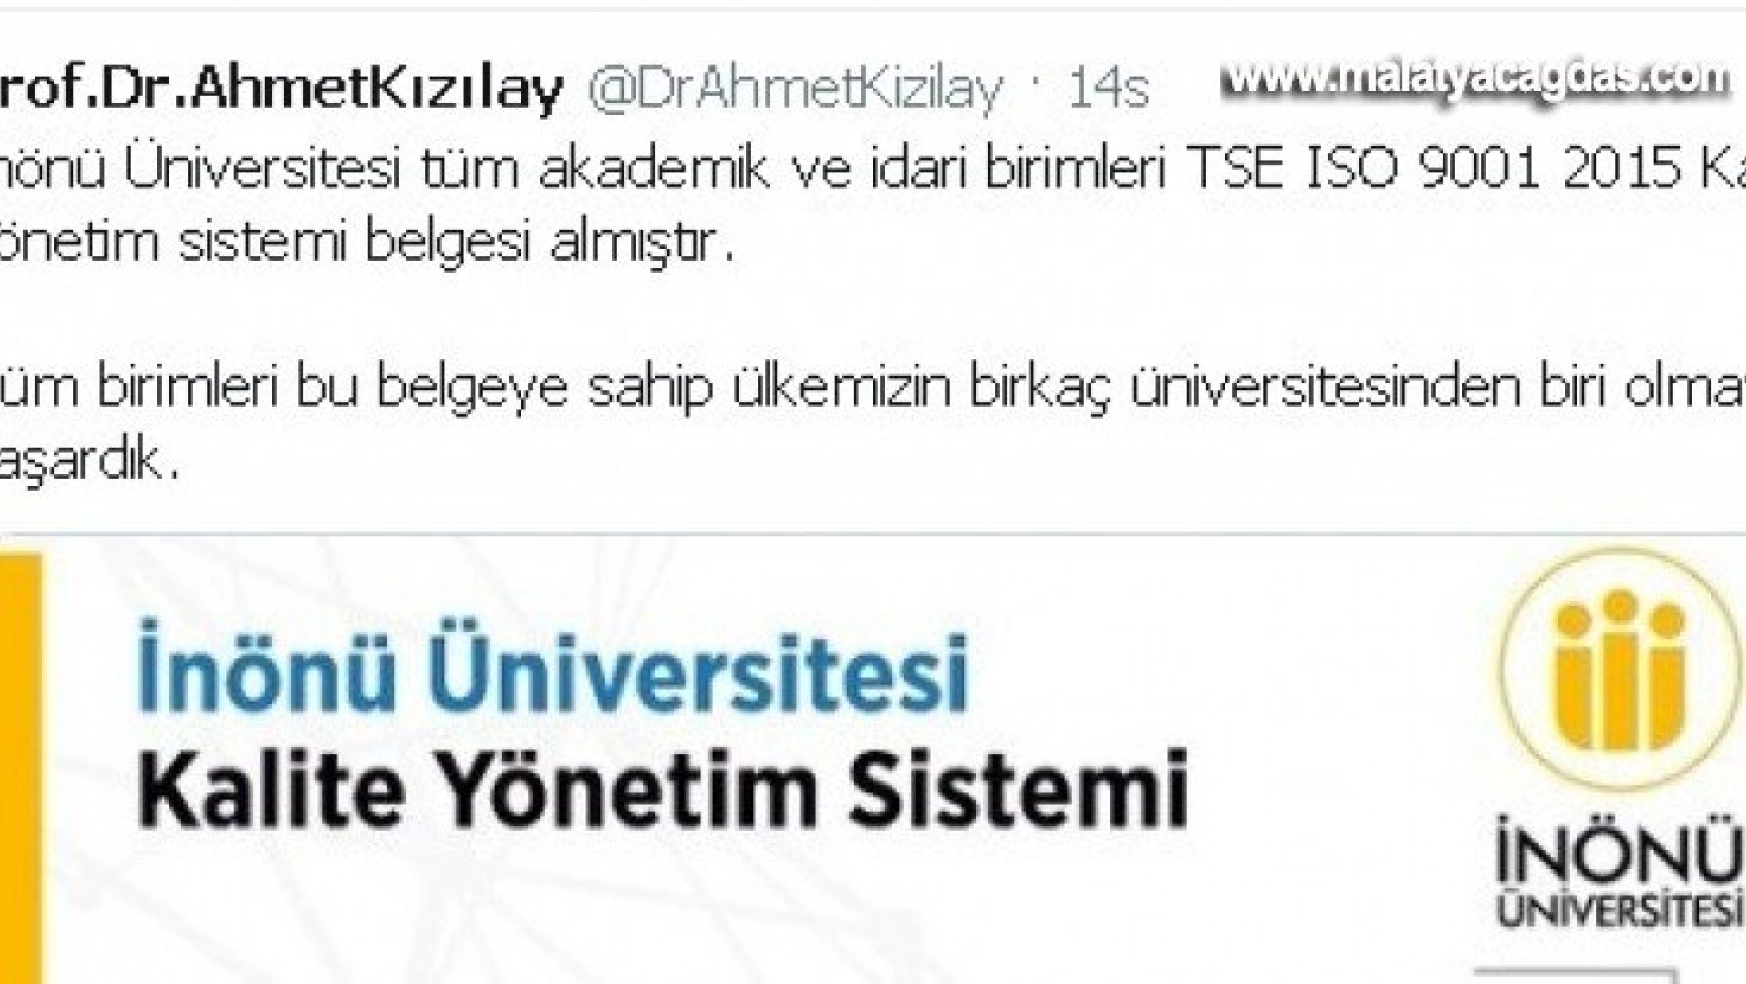 Türkiye'de birkaç üniversiteden biri oldu